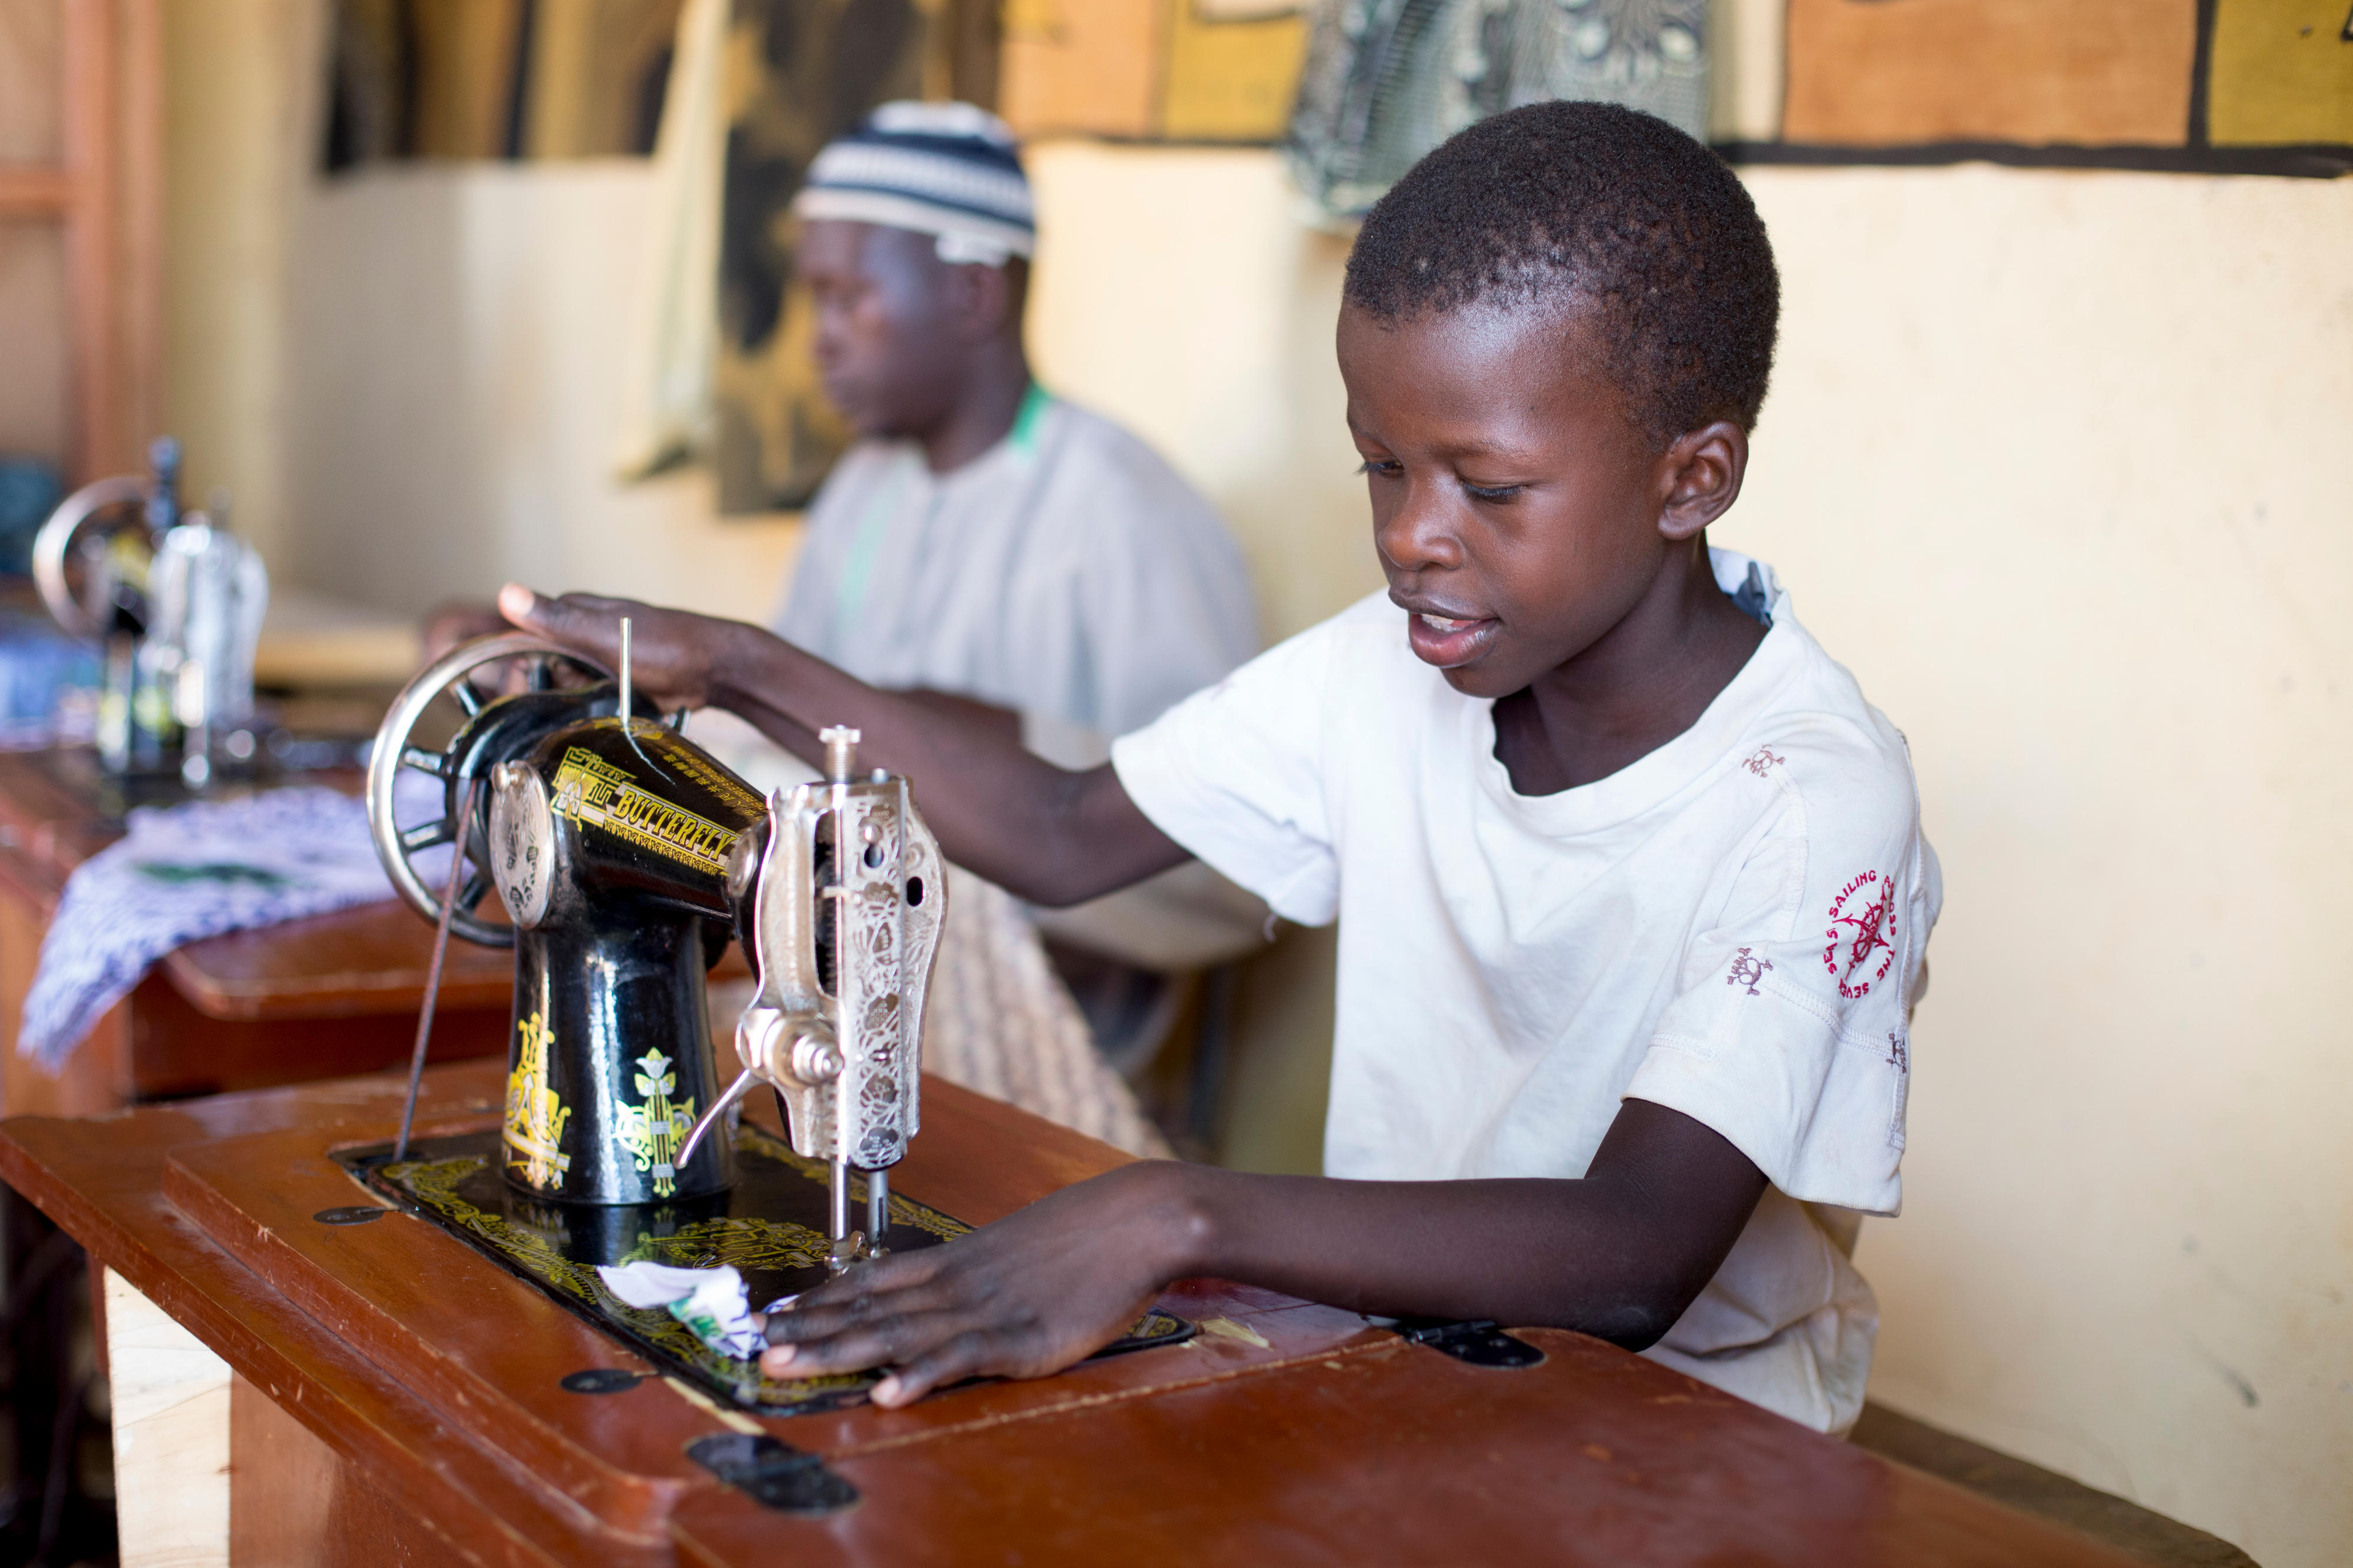 Ein Junge in Mali arbeitet an einer Nähmaschine.